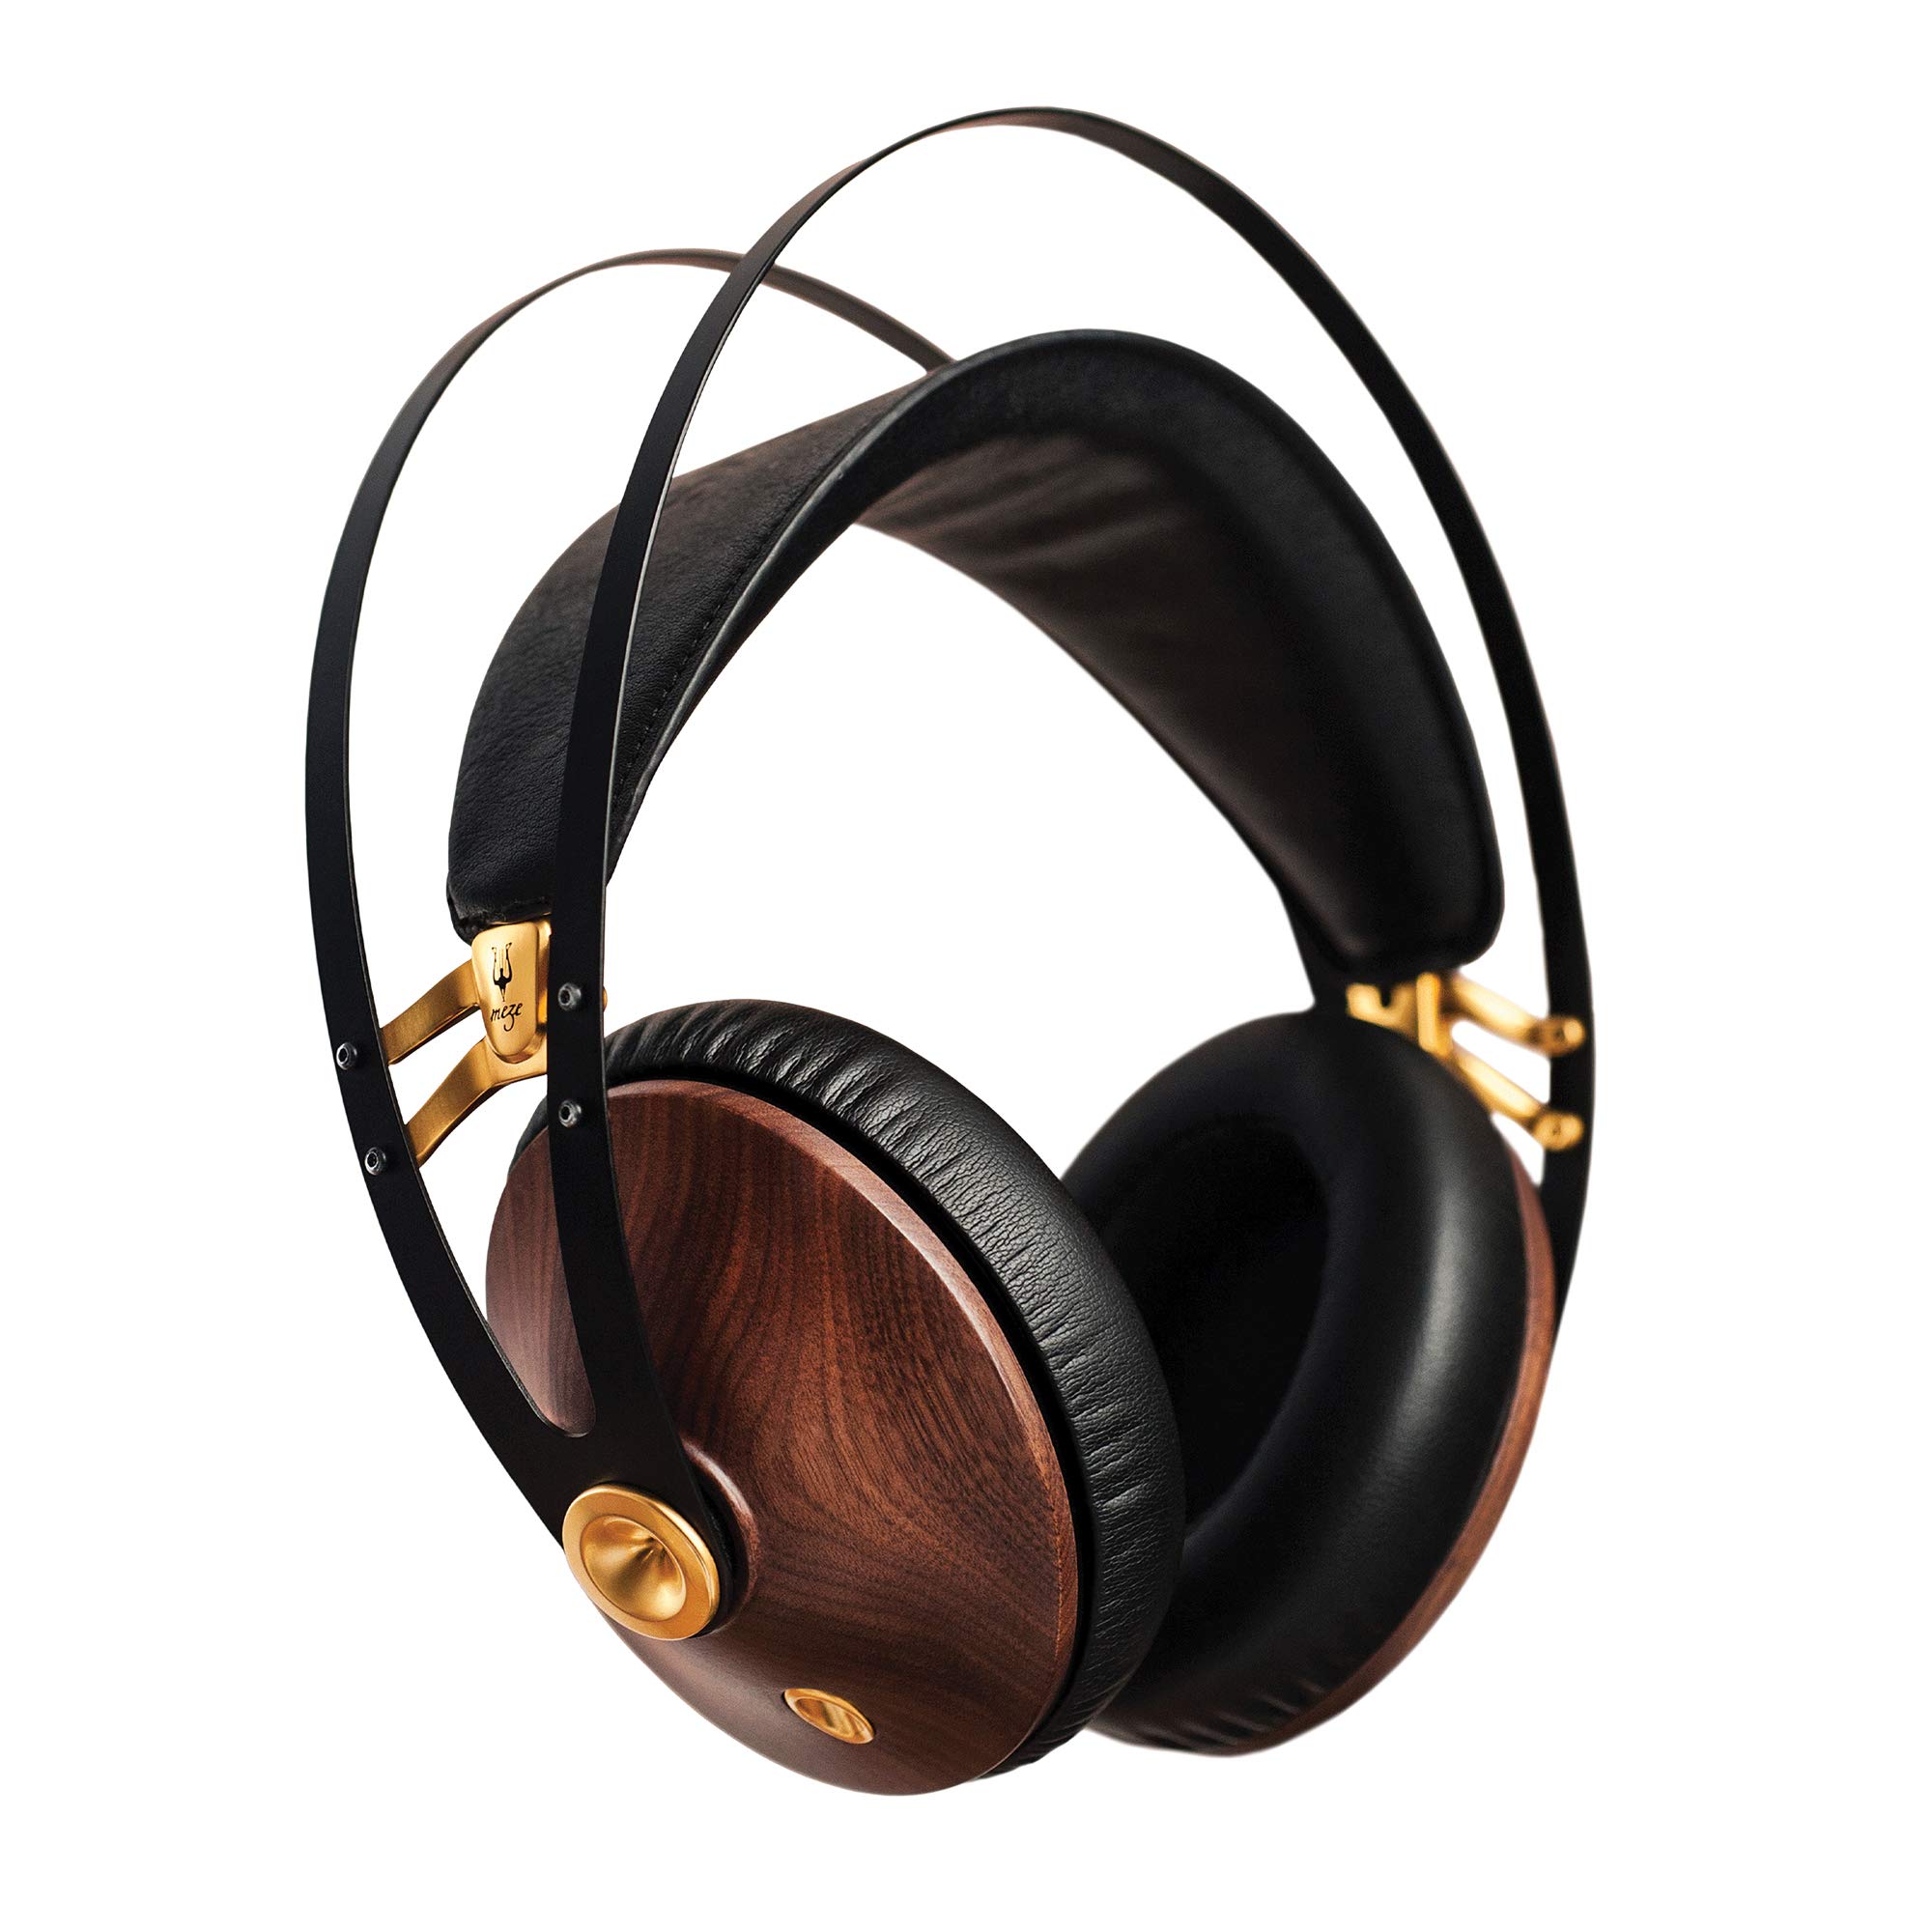 Meze Headphones Meze 99 Classiques Noyer Or | Casque supra-auriculaire filaire avec micro et bandeau auto-ajustable | Casque fermé classique en bois pour audiophiles